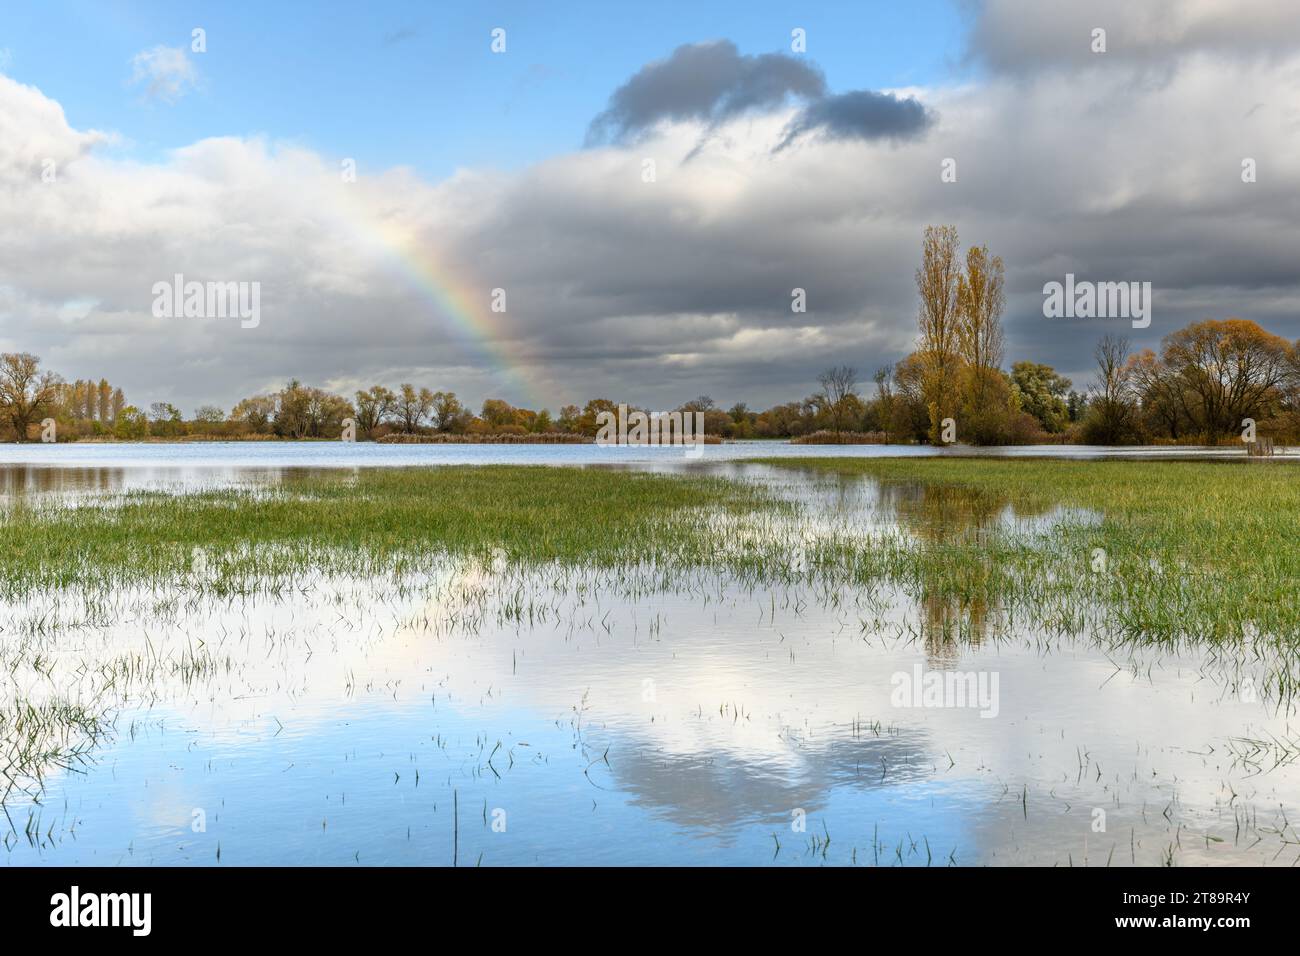 Arc-en-ciel sur une prairie inondée. Paysage d'automne. Bas-Rhin, Collectivite européenne d'Alsace,Grand est, France, Europe. Banque D'Images